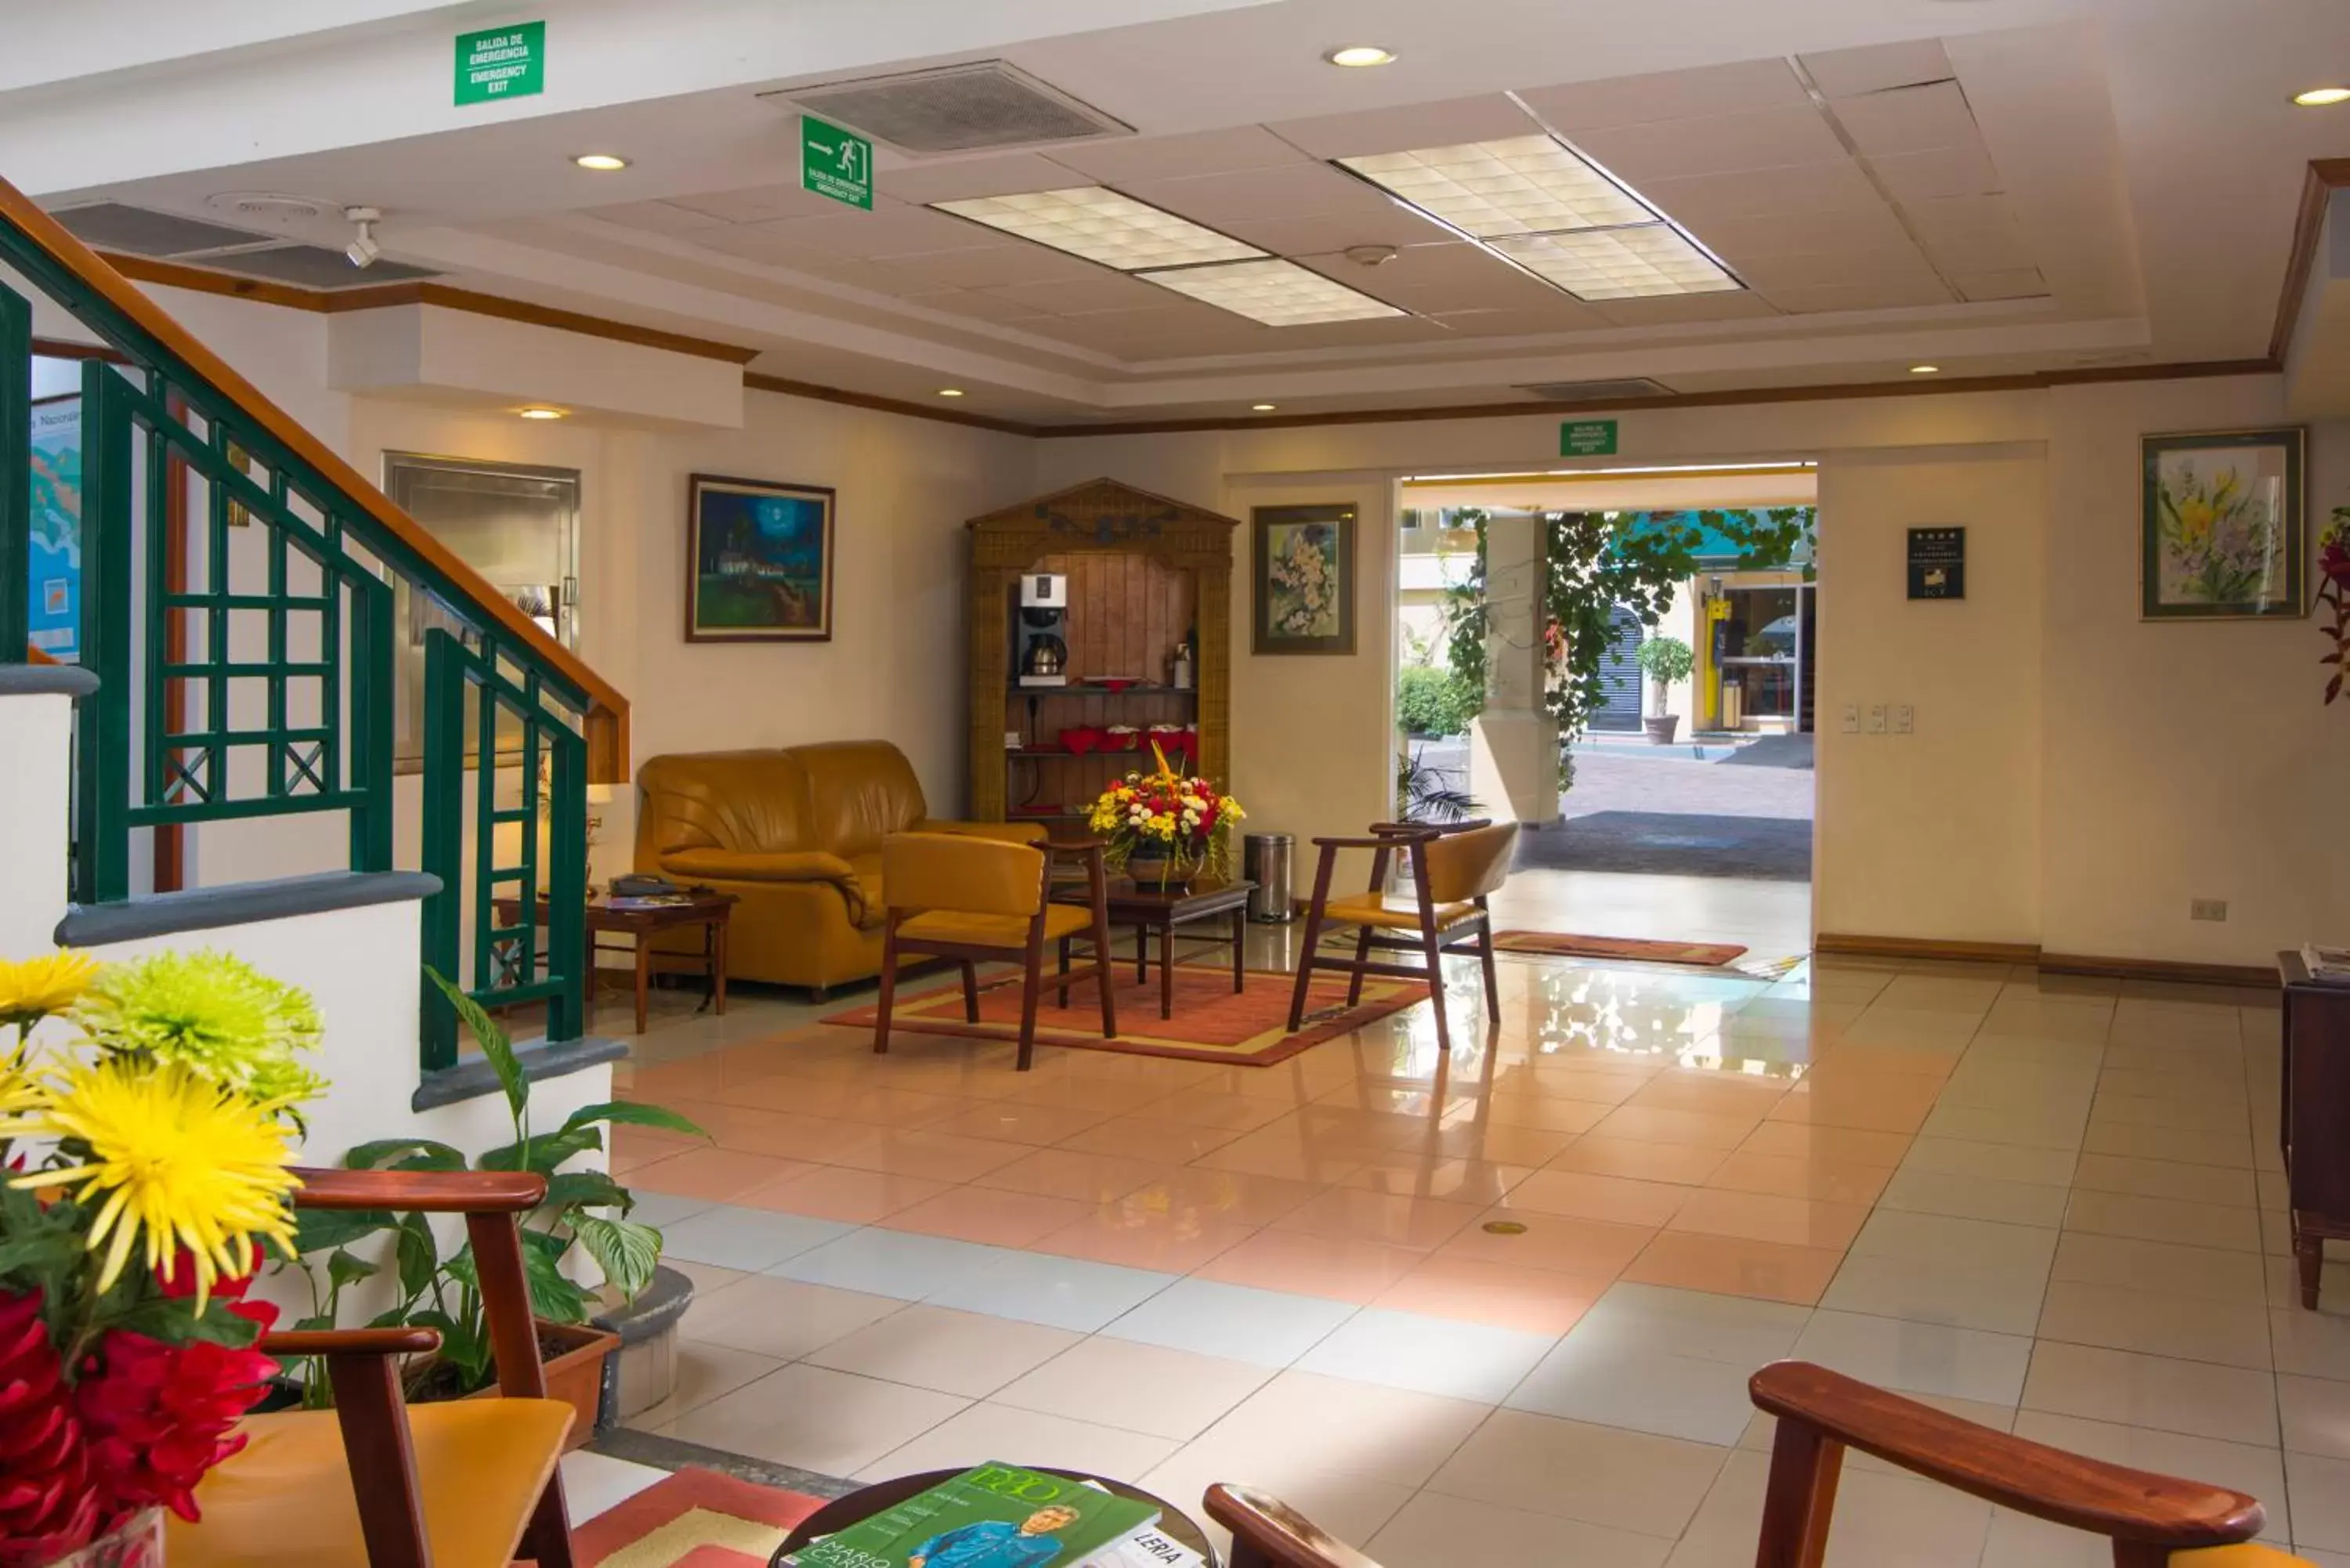 Lobby or reception, Lobby/Reception in Apartotel & Suites Villas del Rio